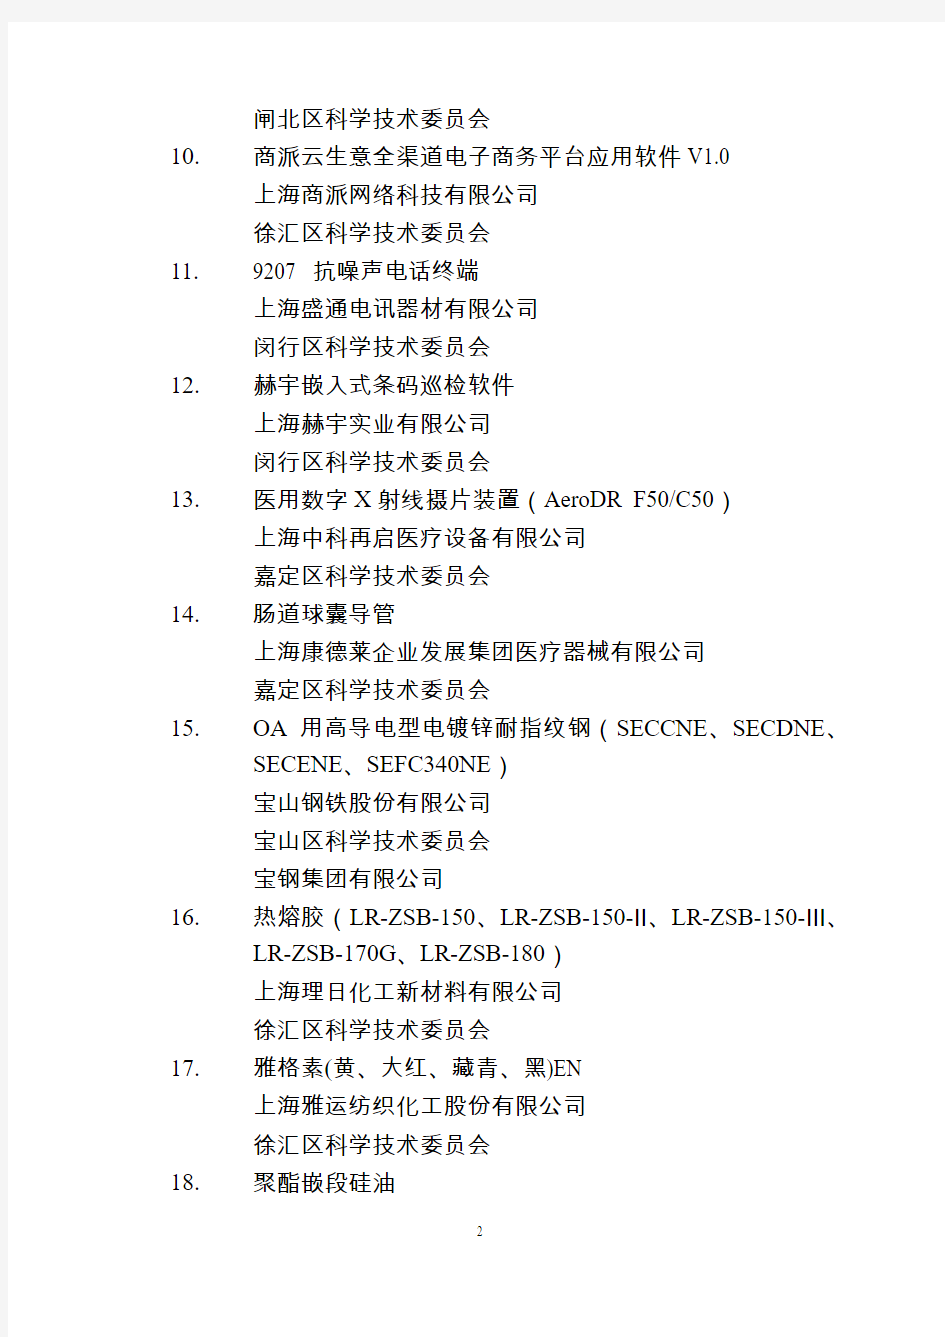 2014 年第 7 批上海市高新技术成果转化项目名单